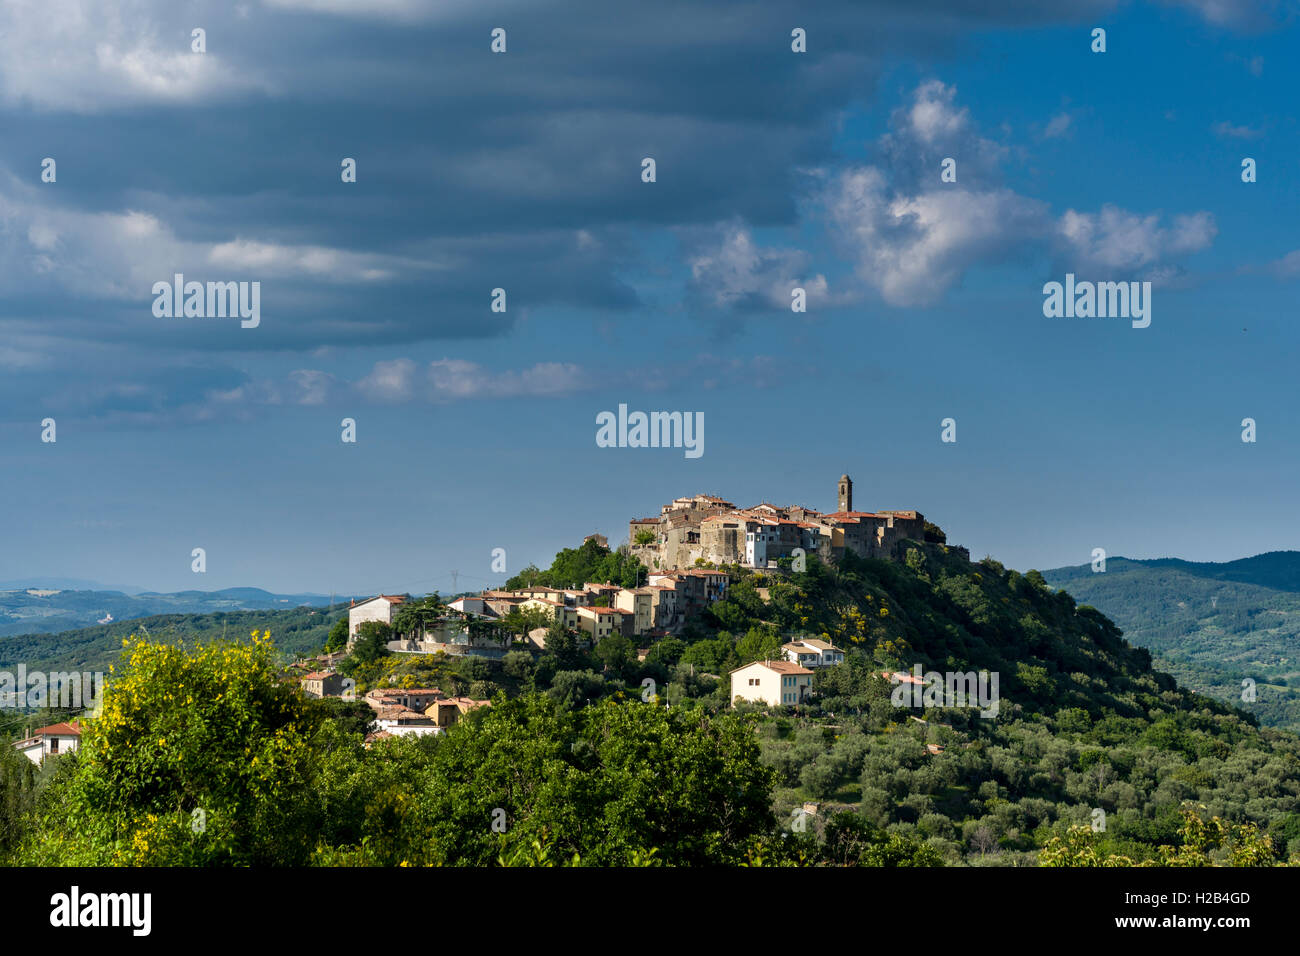 Paysage typique de la Toscane avec des collines et des arbres, vue d'une ville sur une colline, Montegiovi, Toscane, Italie Banque D'Images